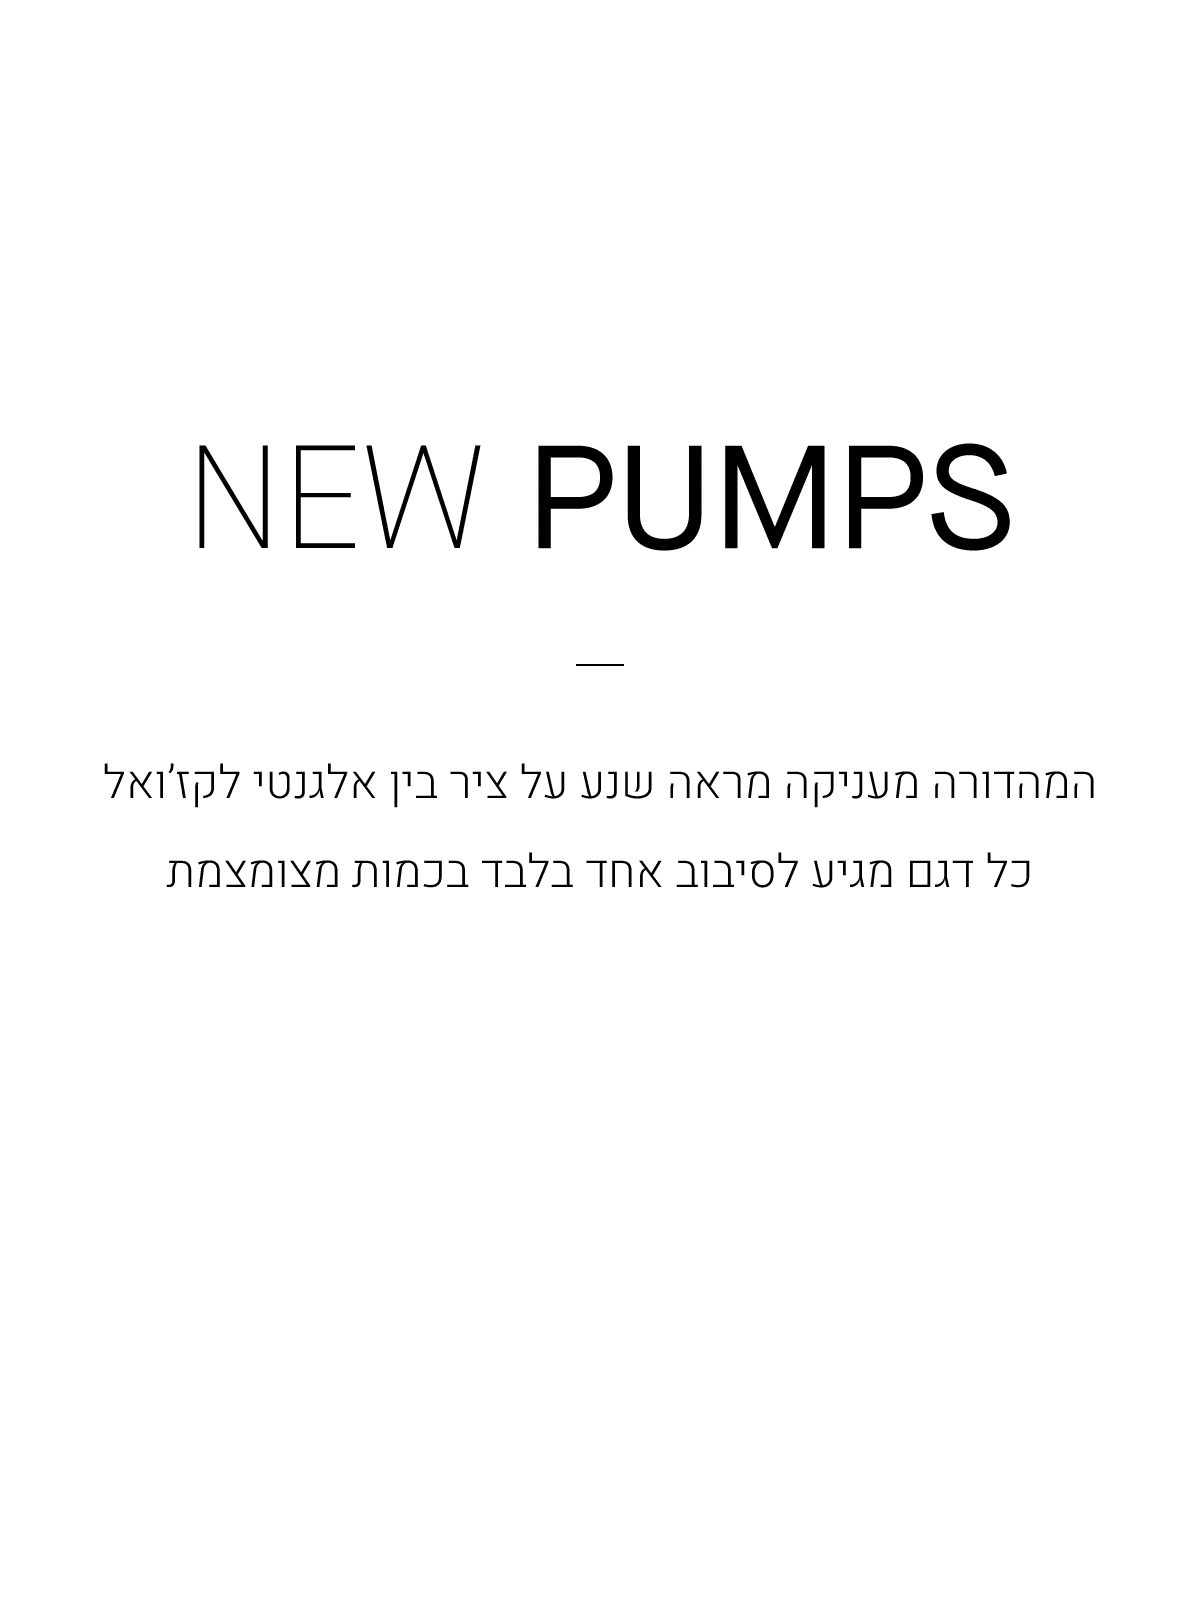 New Pumps